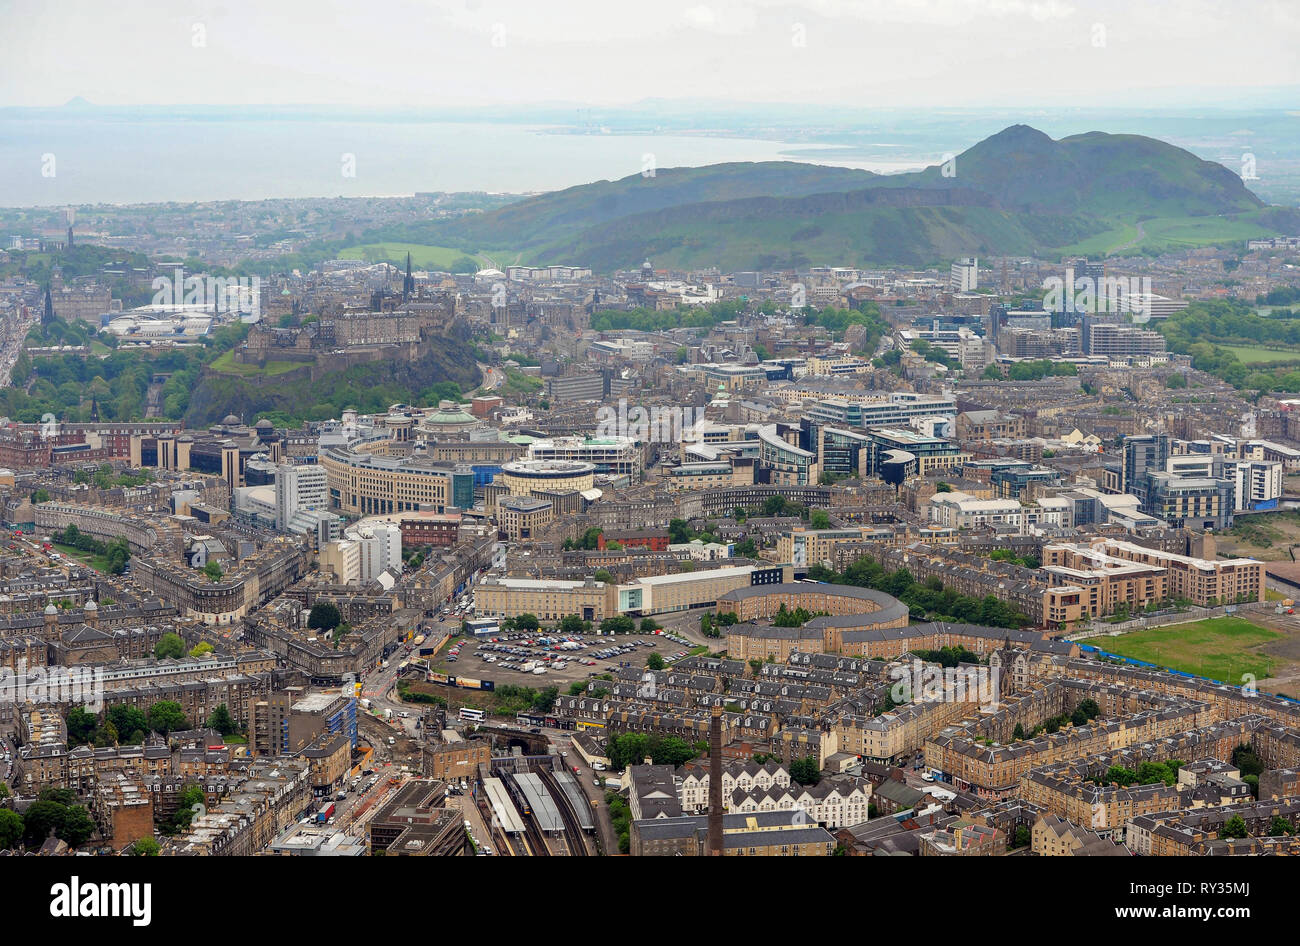 Vista aérea del extremo oeste del centro de la ciudad de Edimburgo. Foto de stock